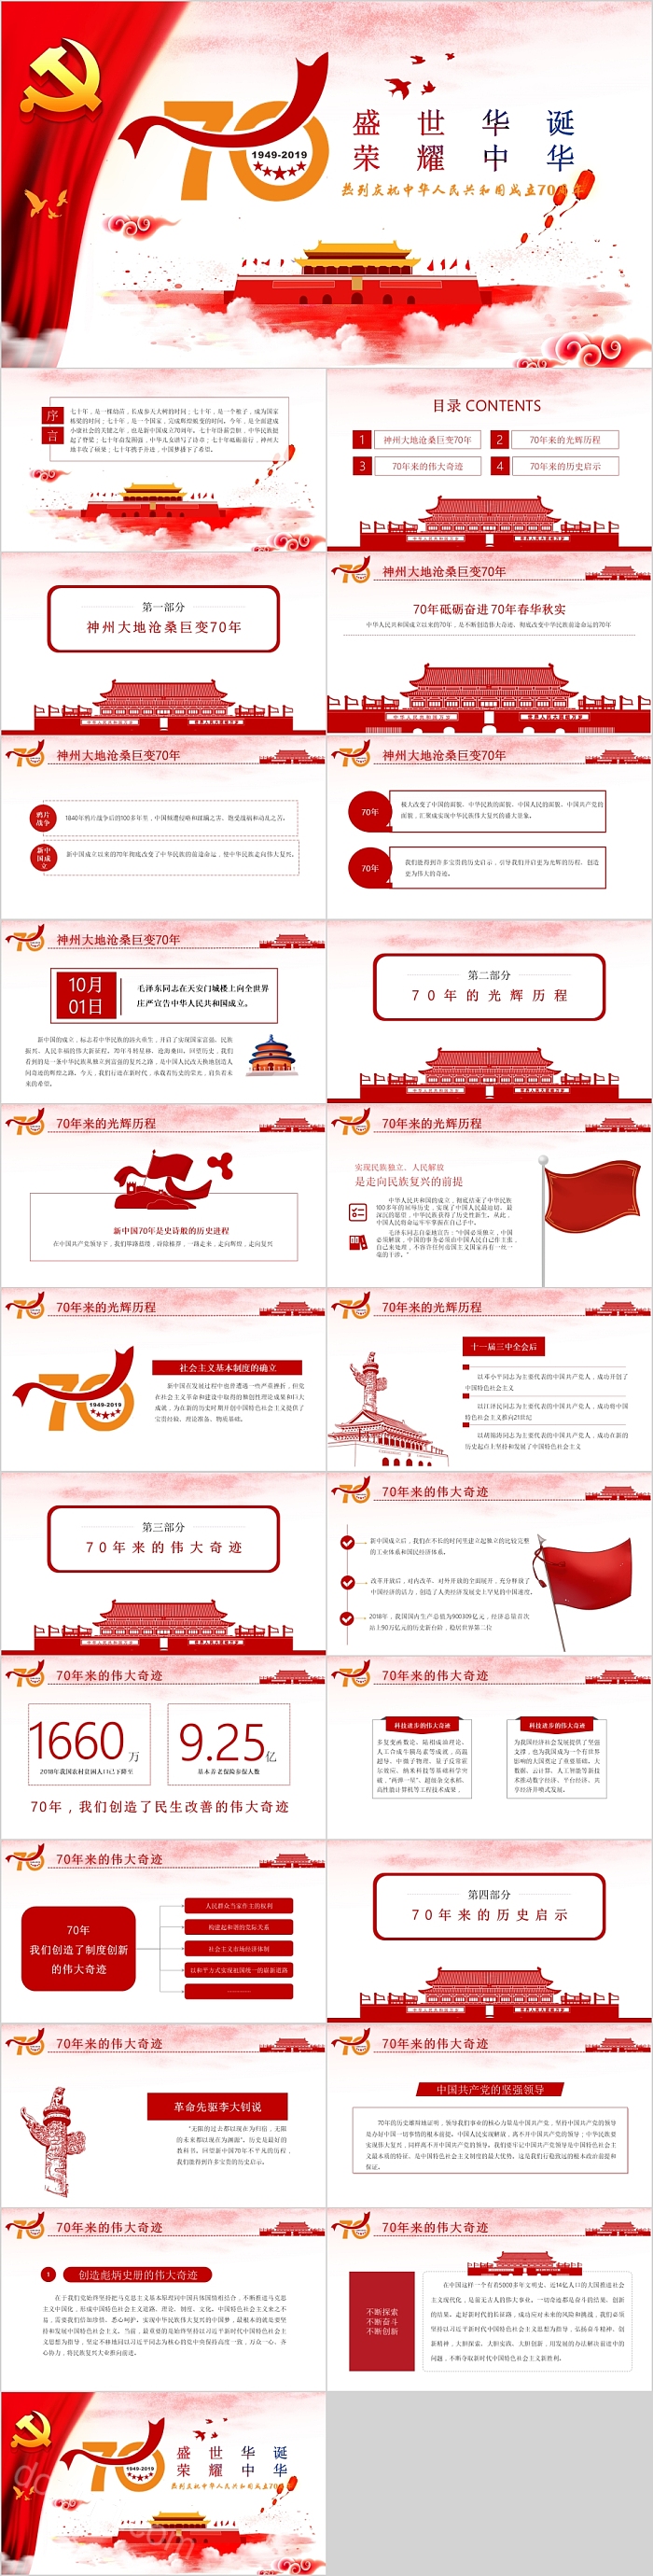 盛世华诞荣耀中华热烈庆祝中华人名共和国成立70周年